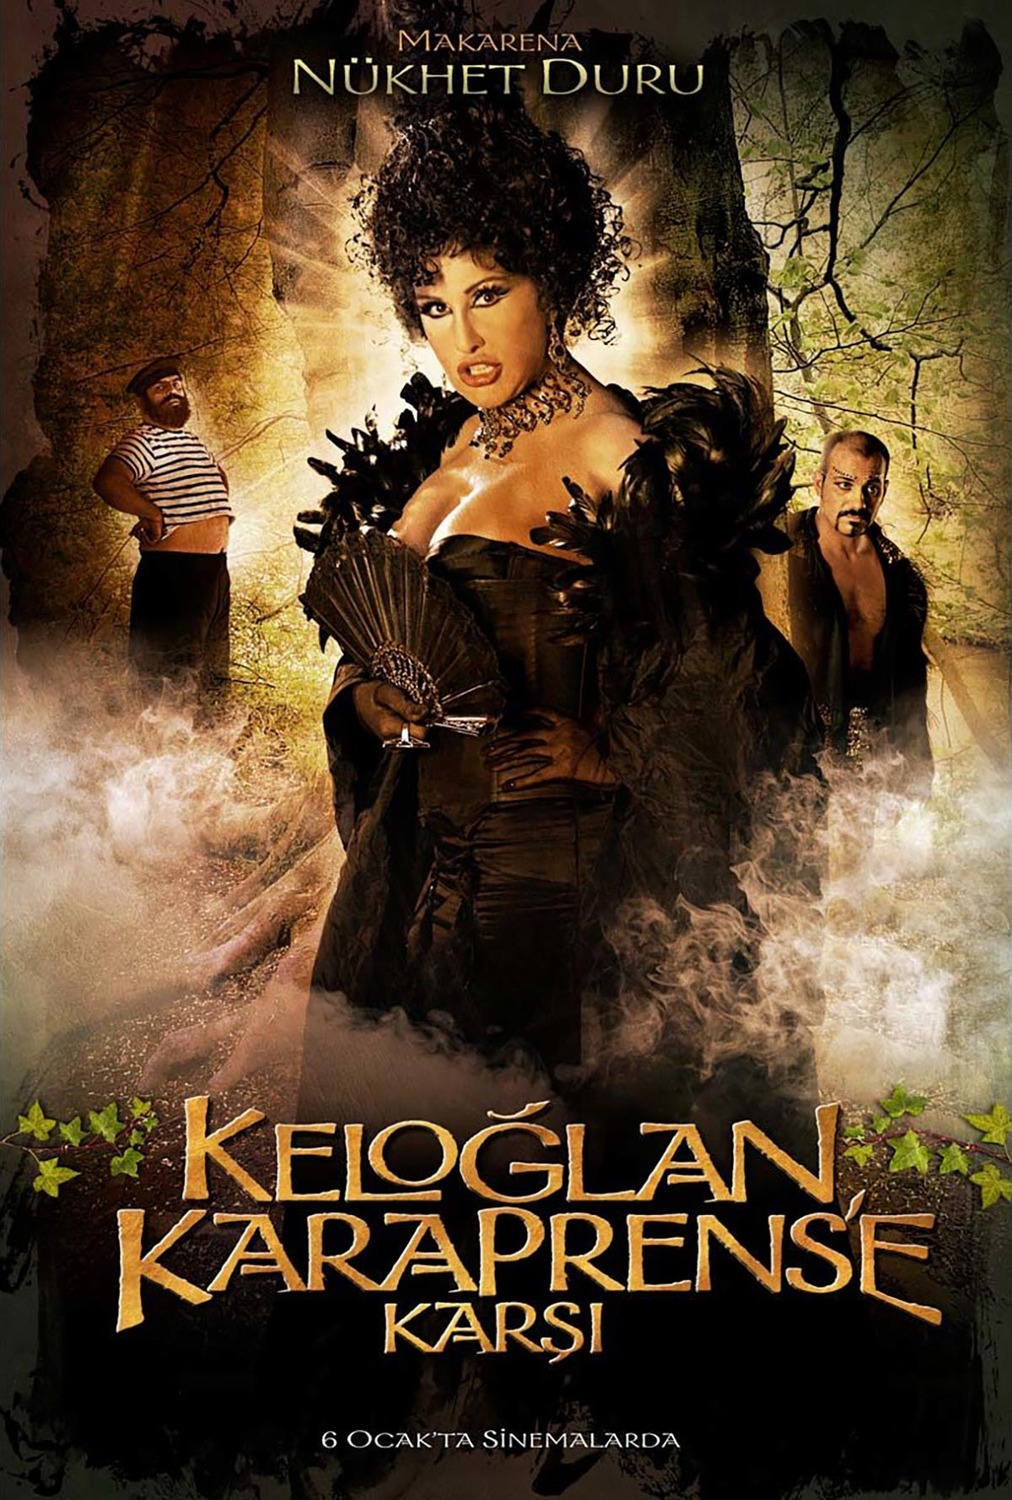 Extra Large Movie Poster Image for Keloglan Karaprens'e Karsi (#4 of 8)